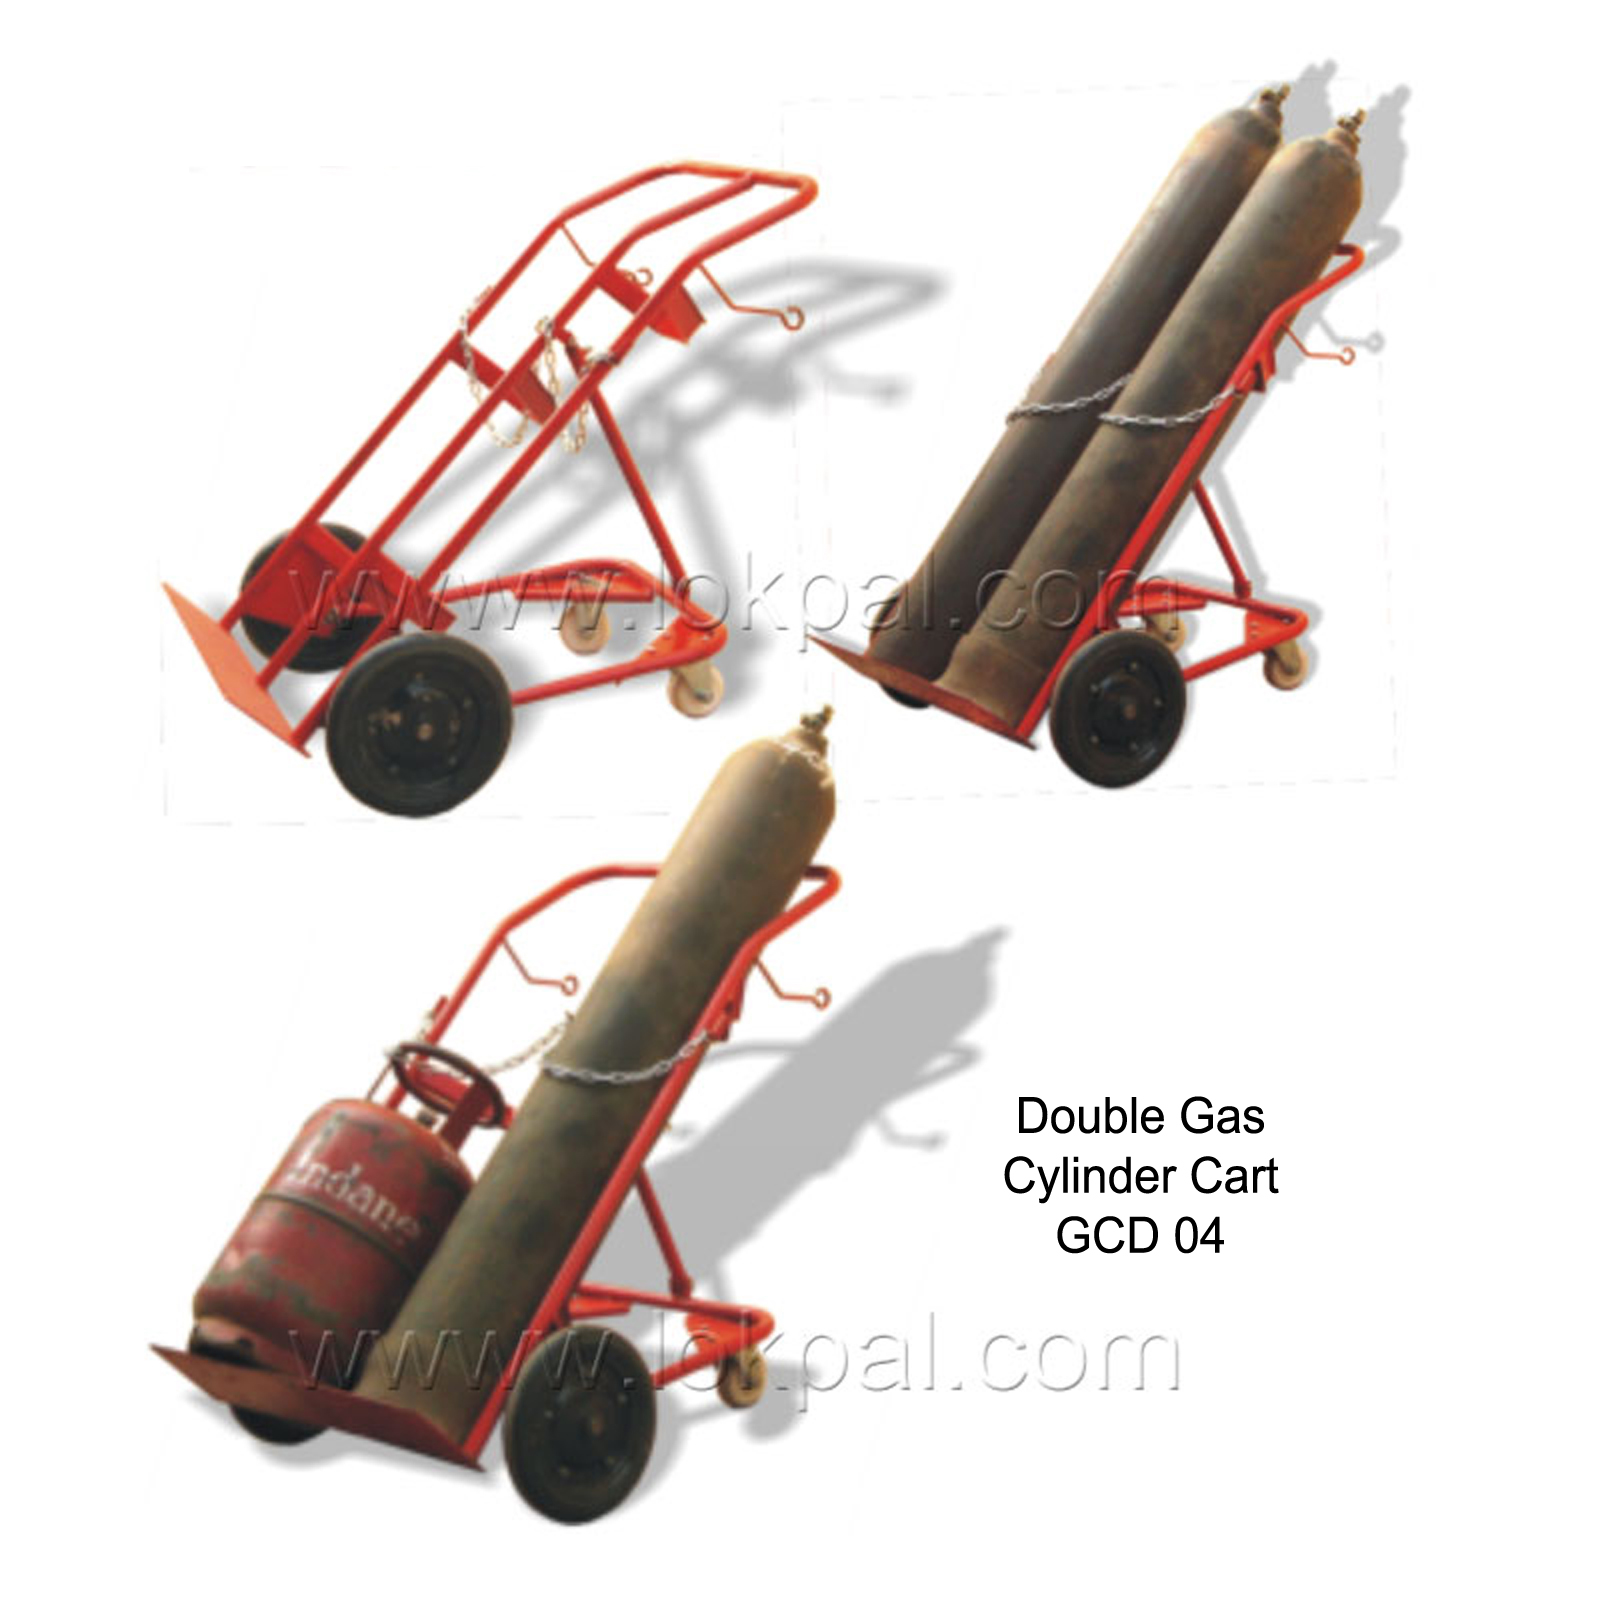 Gas Cylinder Trolley, Gas Cylinder Trolley Manufacturer, Hand Trolley Wholesaler, Cylinder Trolley Distributor, Supplier, Delhi NCR, Noida, India